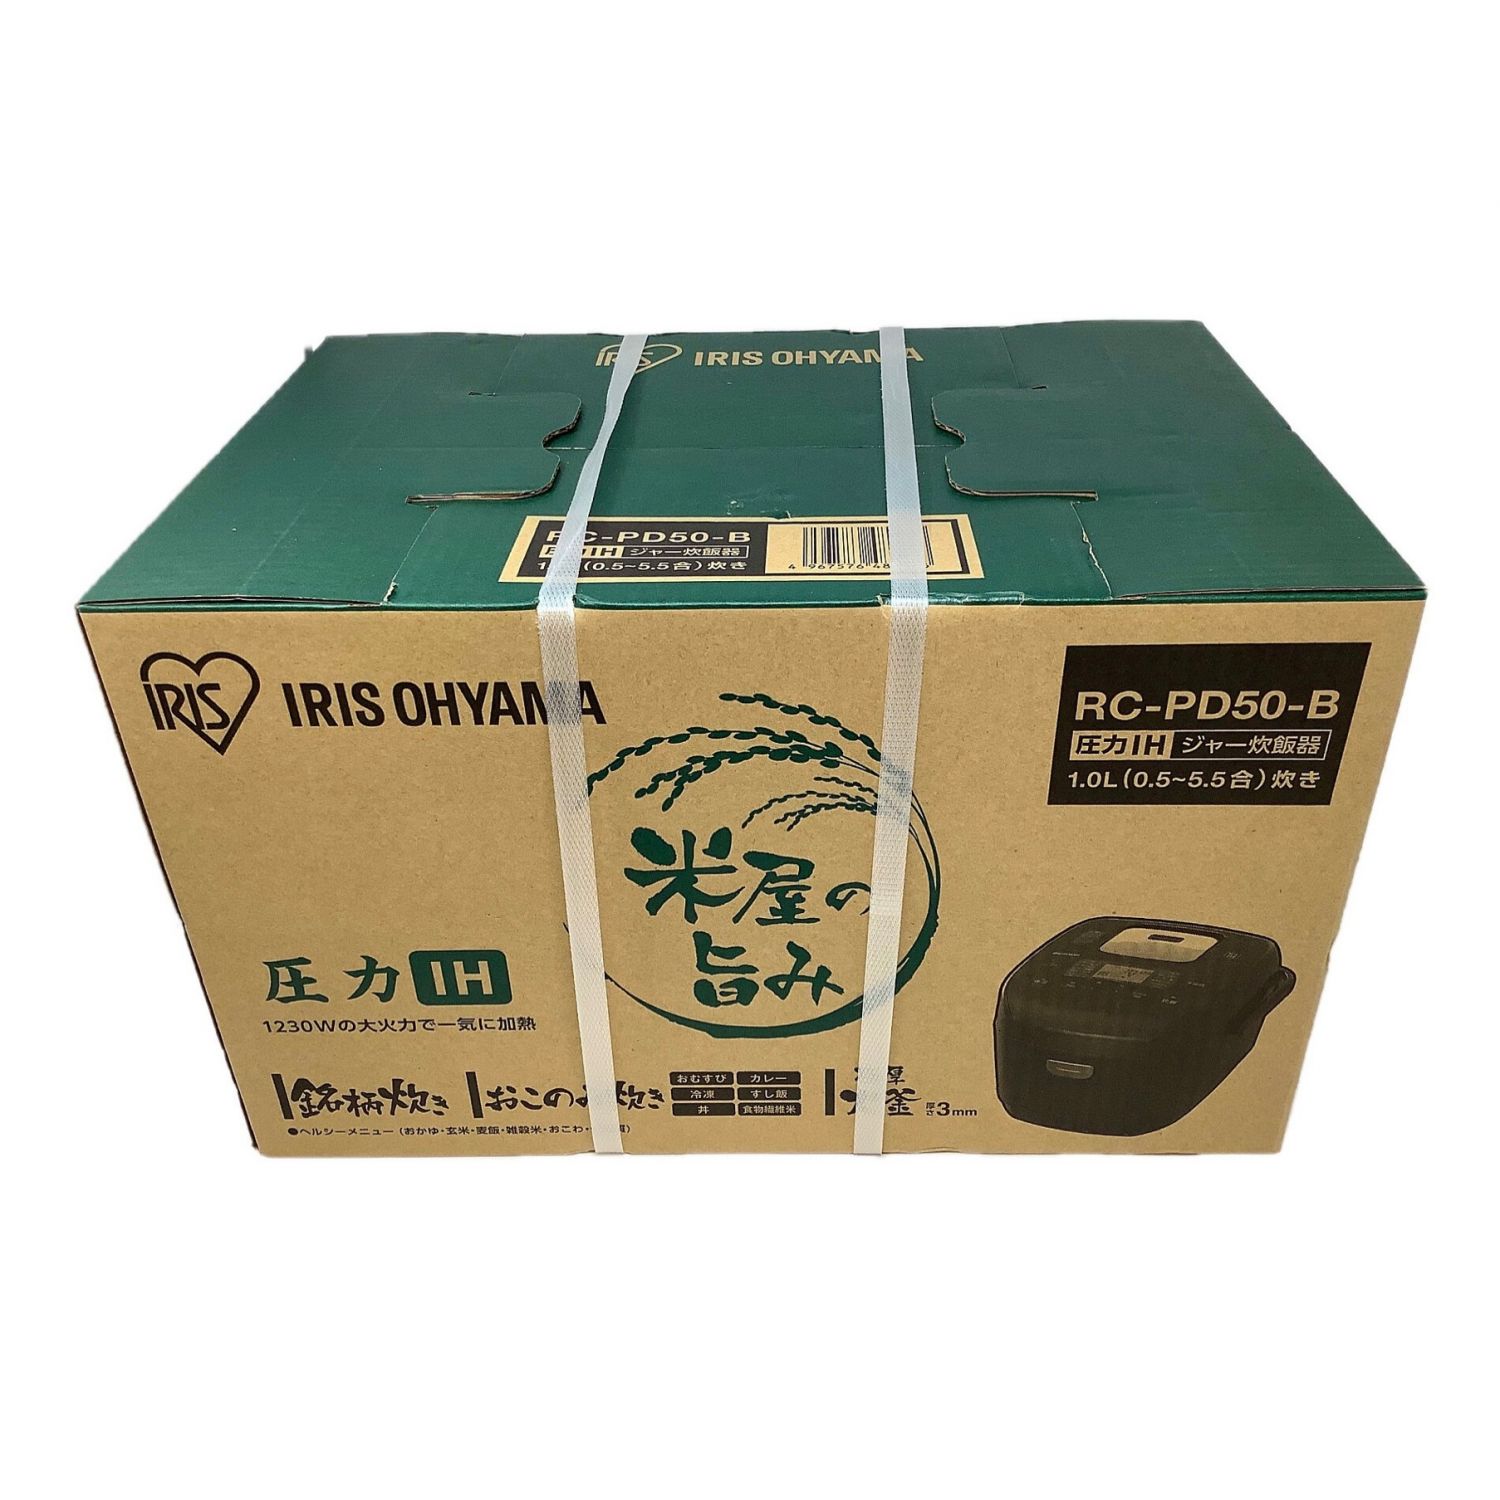 IRIS OHYAMA (アイリスオーヤマ) 圧力IH炊飯ジャー RC-PD50-B 5.5合(1.0L) 程度S(未使用品)  未使用品｜トレファクONLINE